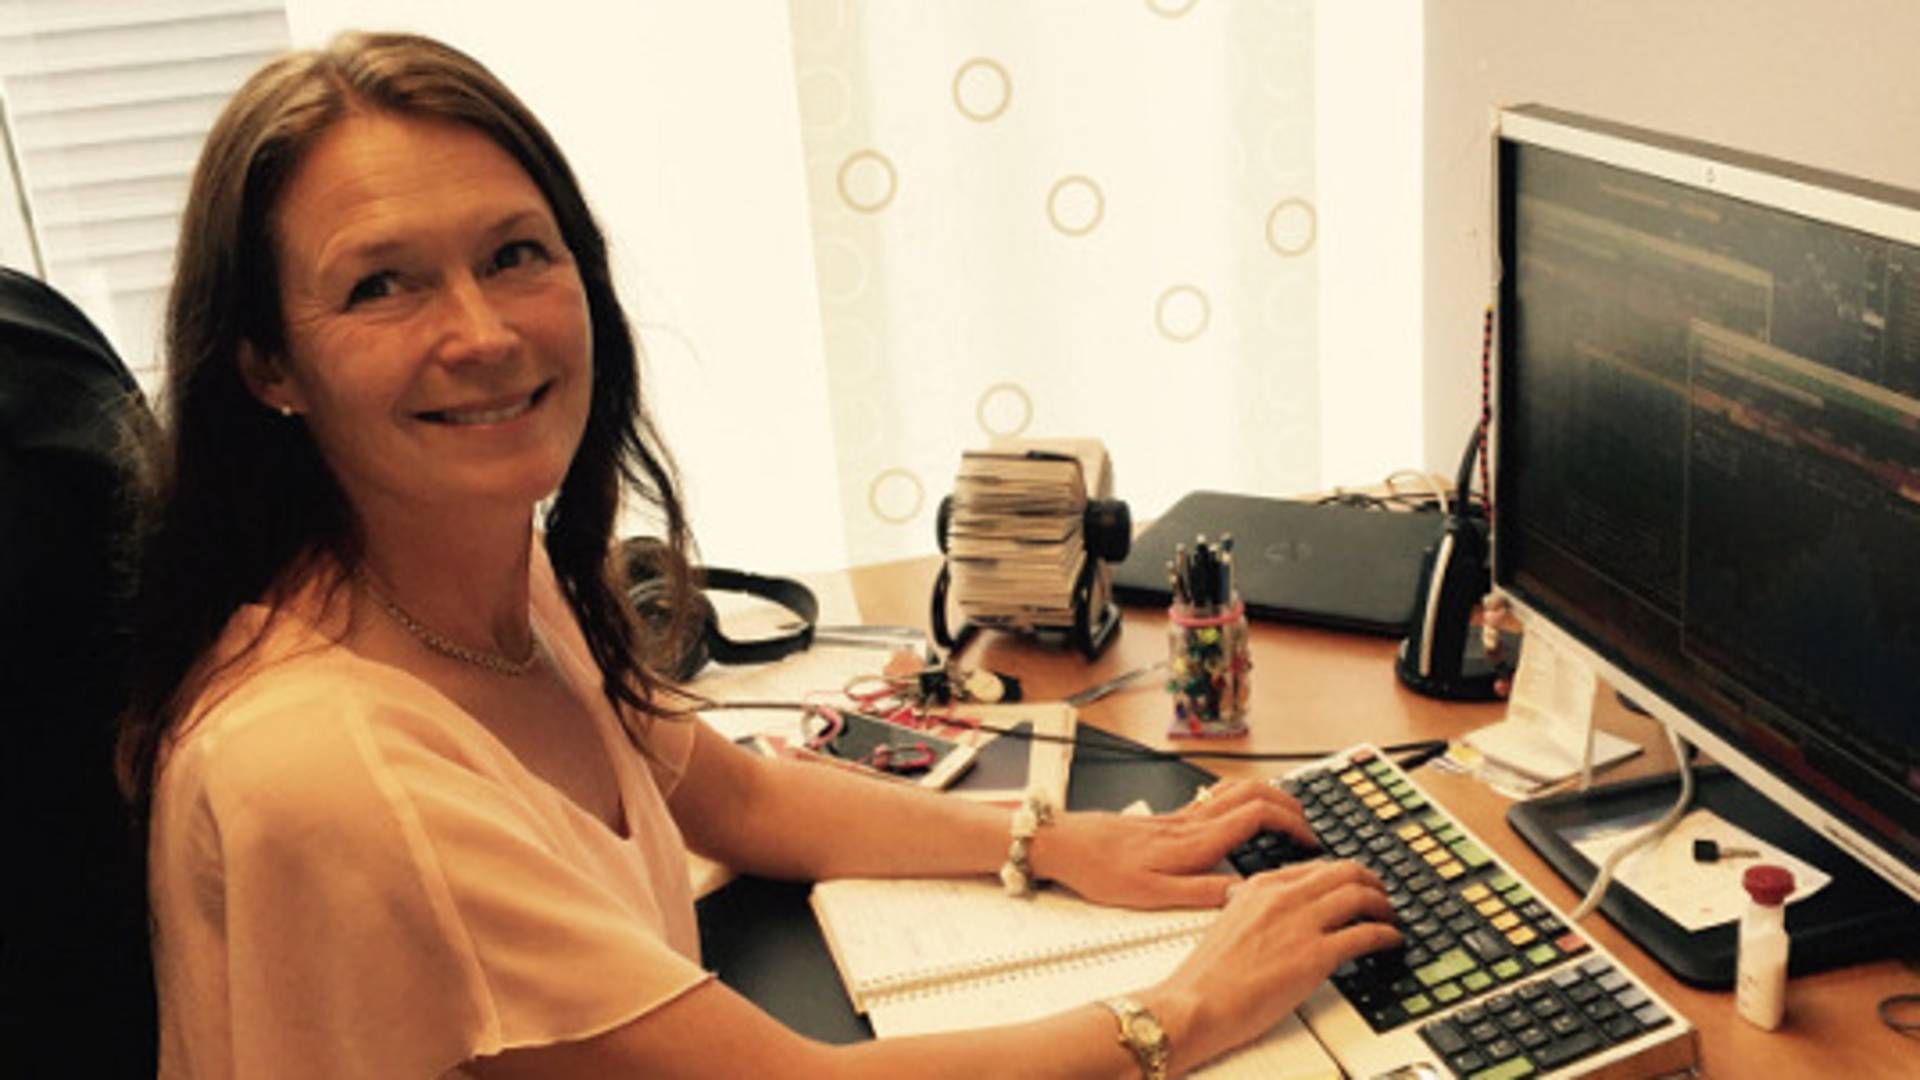 Anette Dahlberg manages SEK 17bn at Länsförsäkringar but will be responsible for triple the amount at AP1. | Photo: PR / Länsförsäkringar